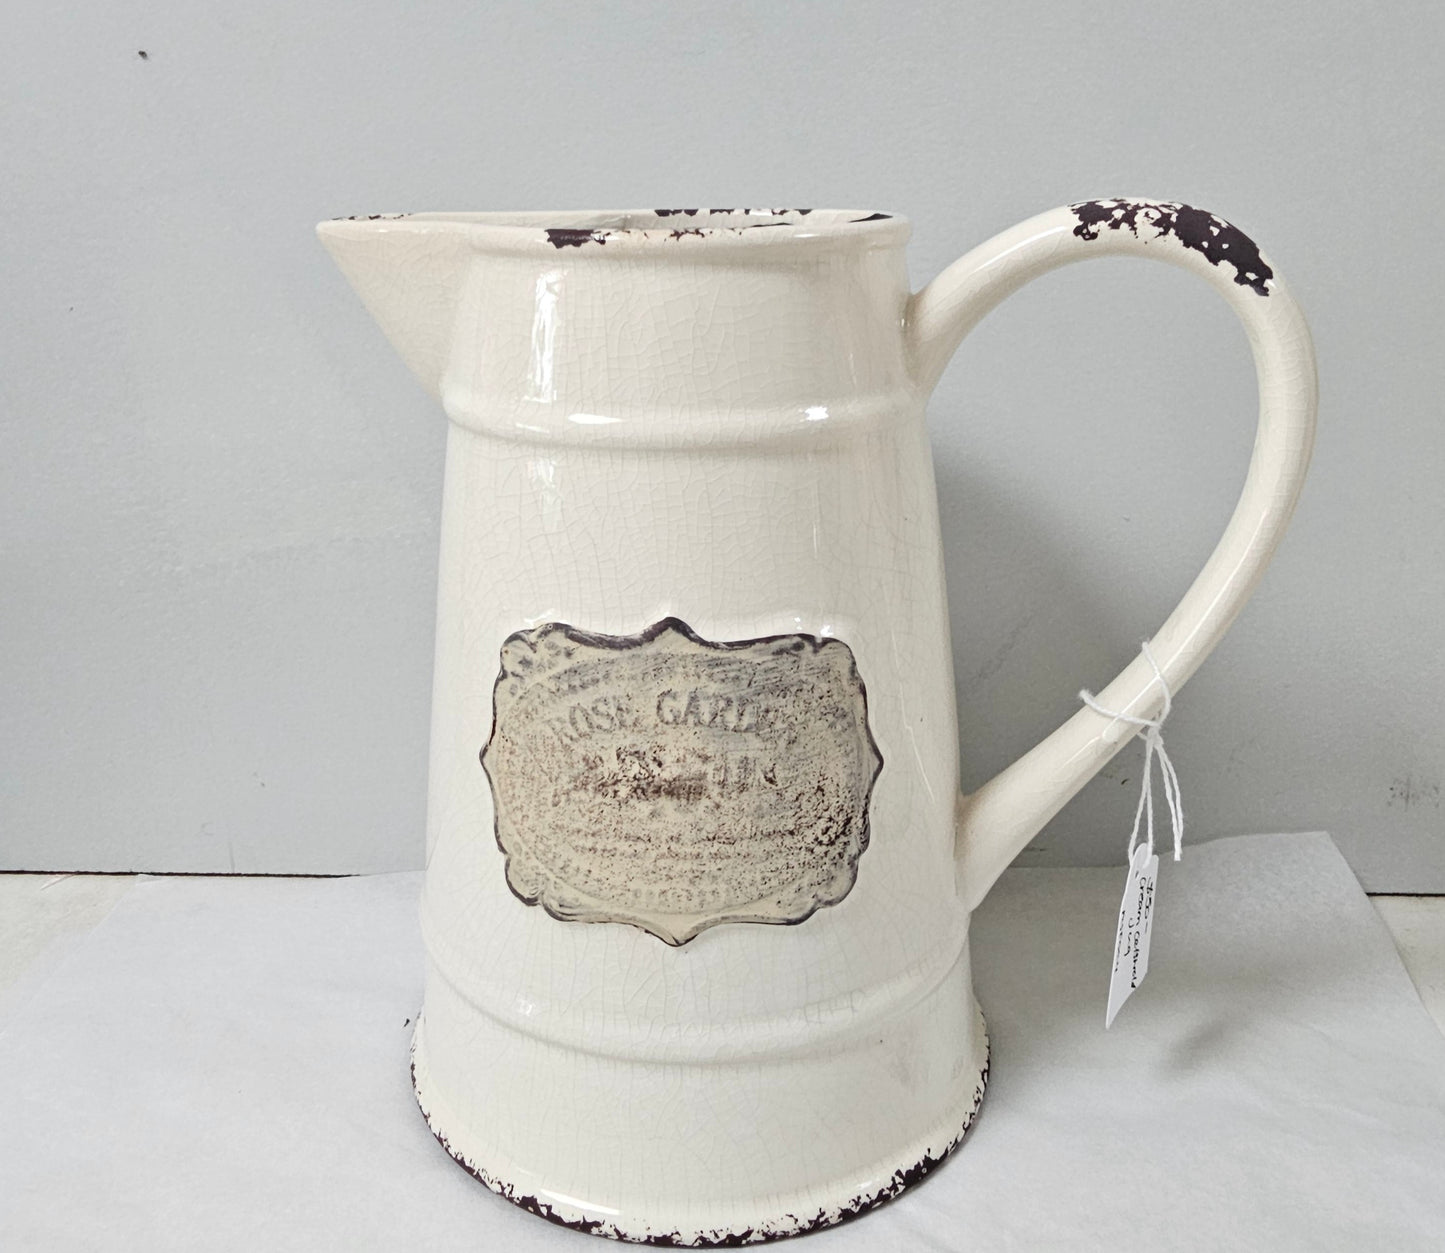 Cream ceramic jug with Rose garden motif